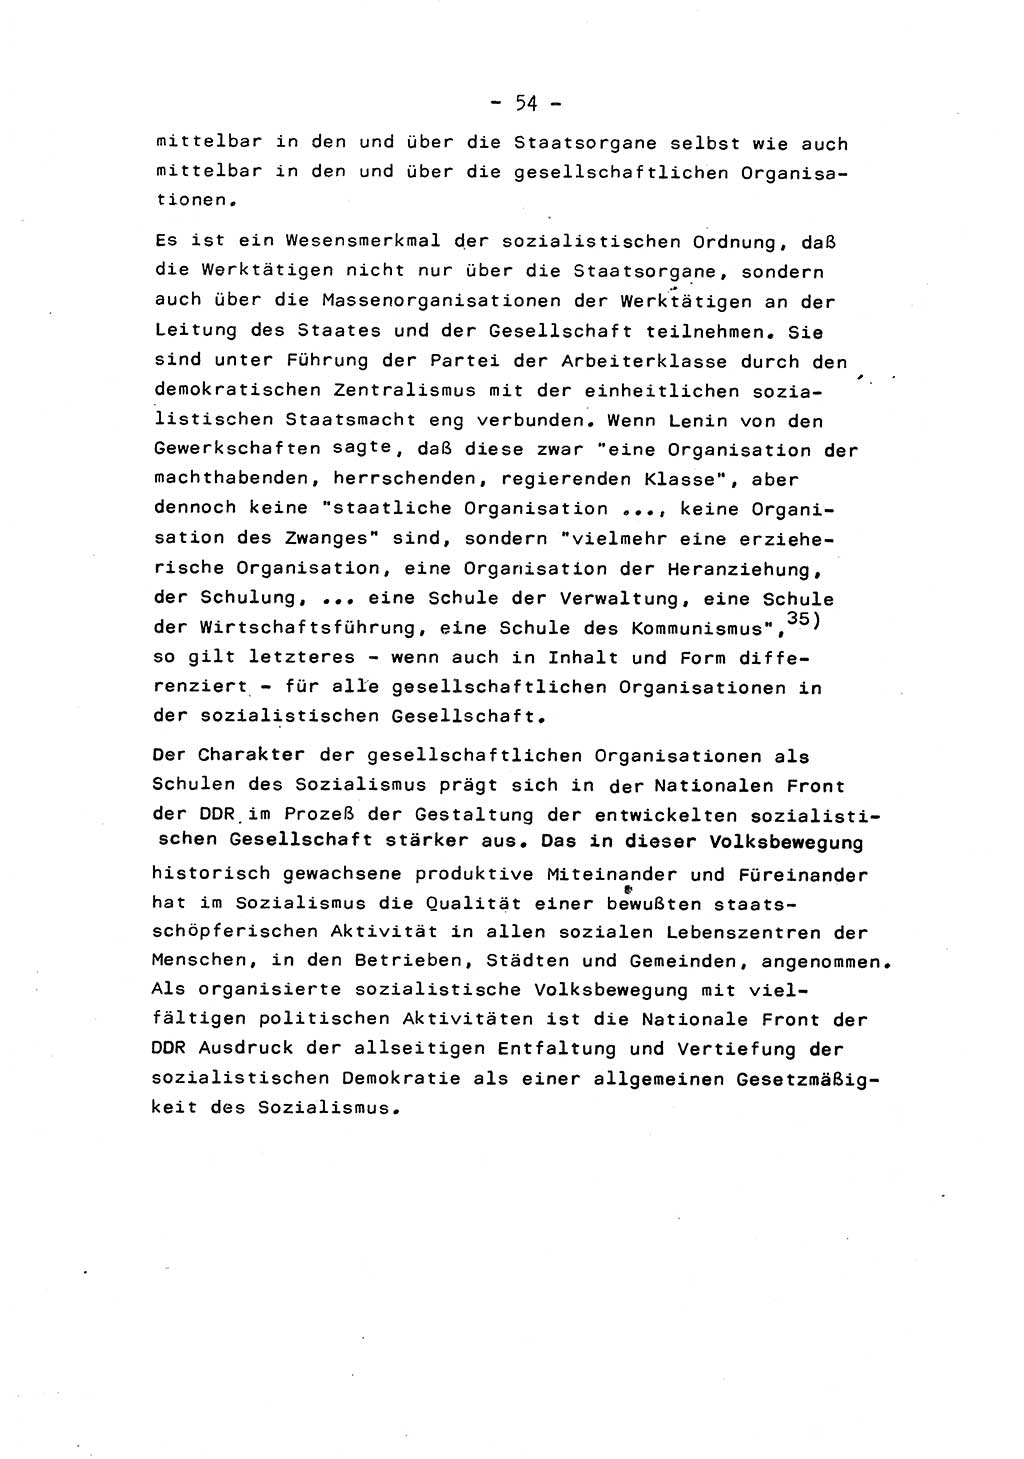 Marxistisch-leninistische Staats- und Rechtstheorie [Deutsche Demokratische Republik (DDR)] 1975, Seite 54 (ML St.-R.-Th. DDR 1975, S. 54)